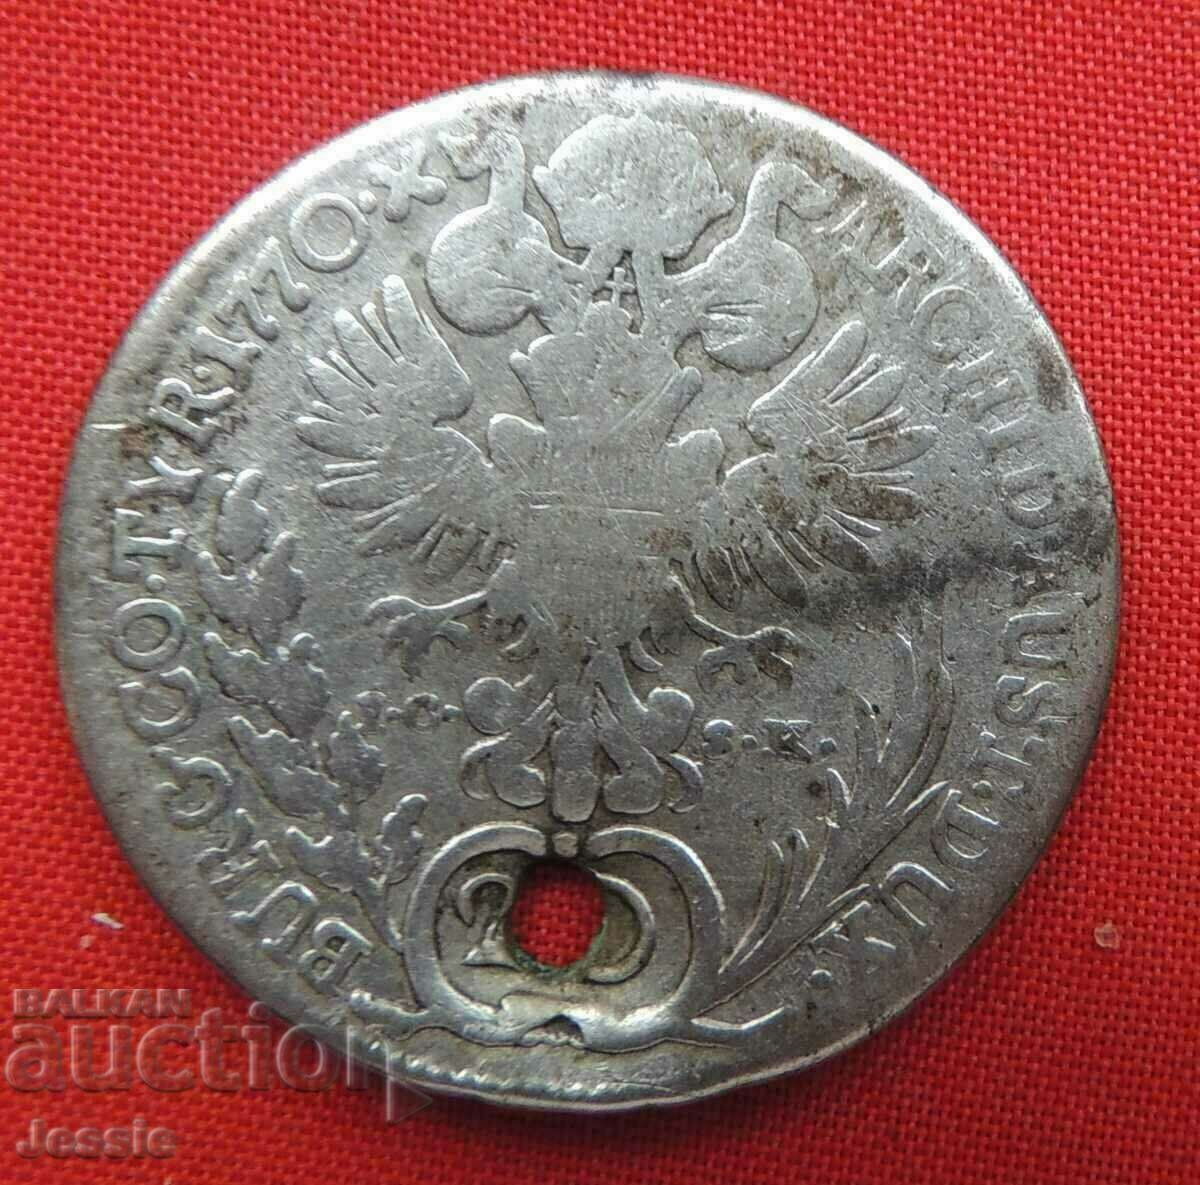 20 кройцера 1770 г.  сребро (Мария Терезия)